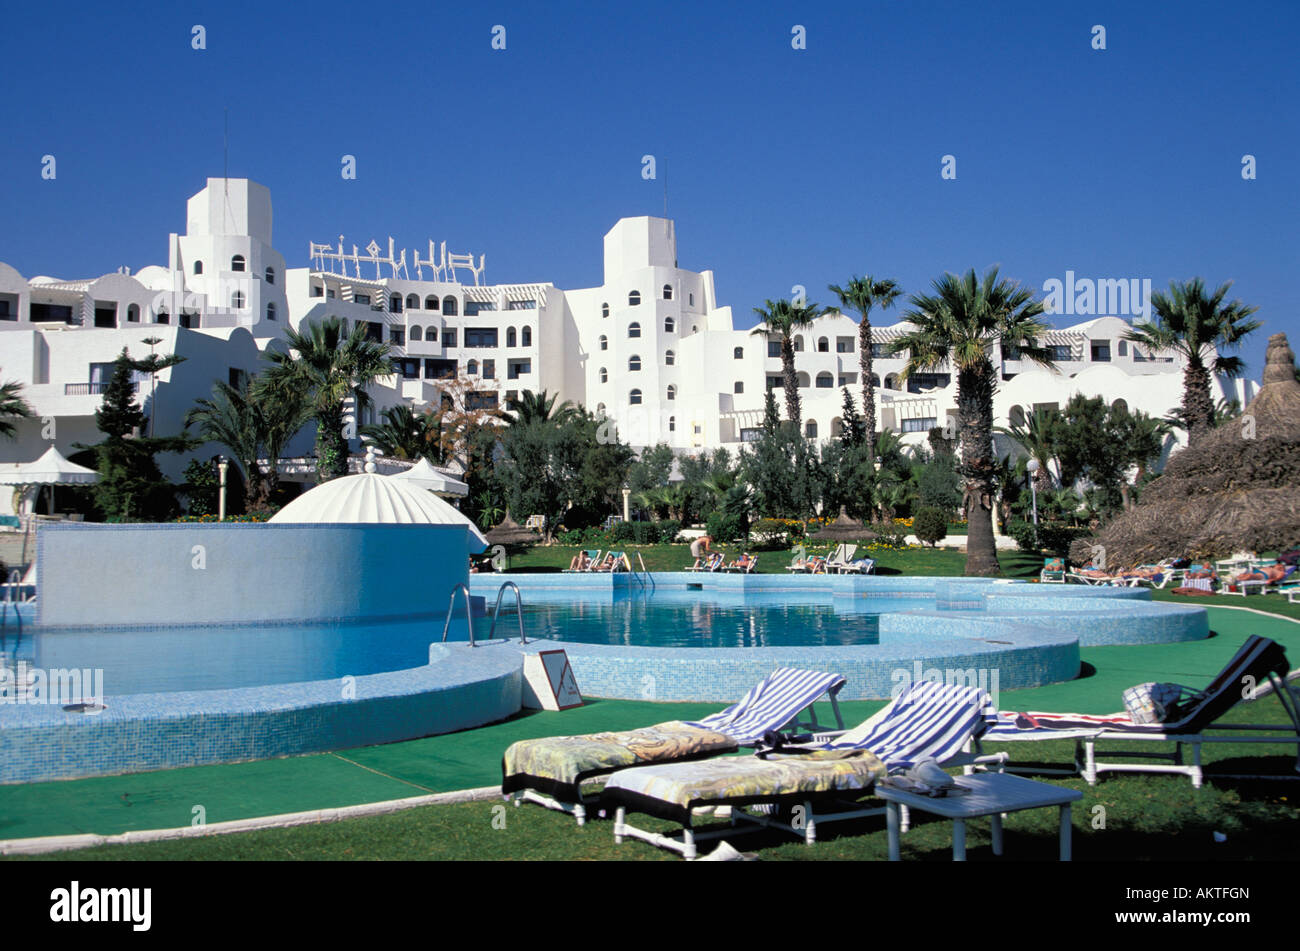 Hotel El Hana Hannibal Palace Port el Kantaoui Tunesia Stock Photo